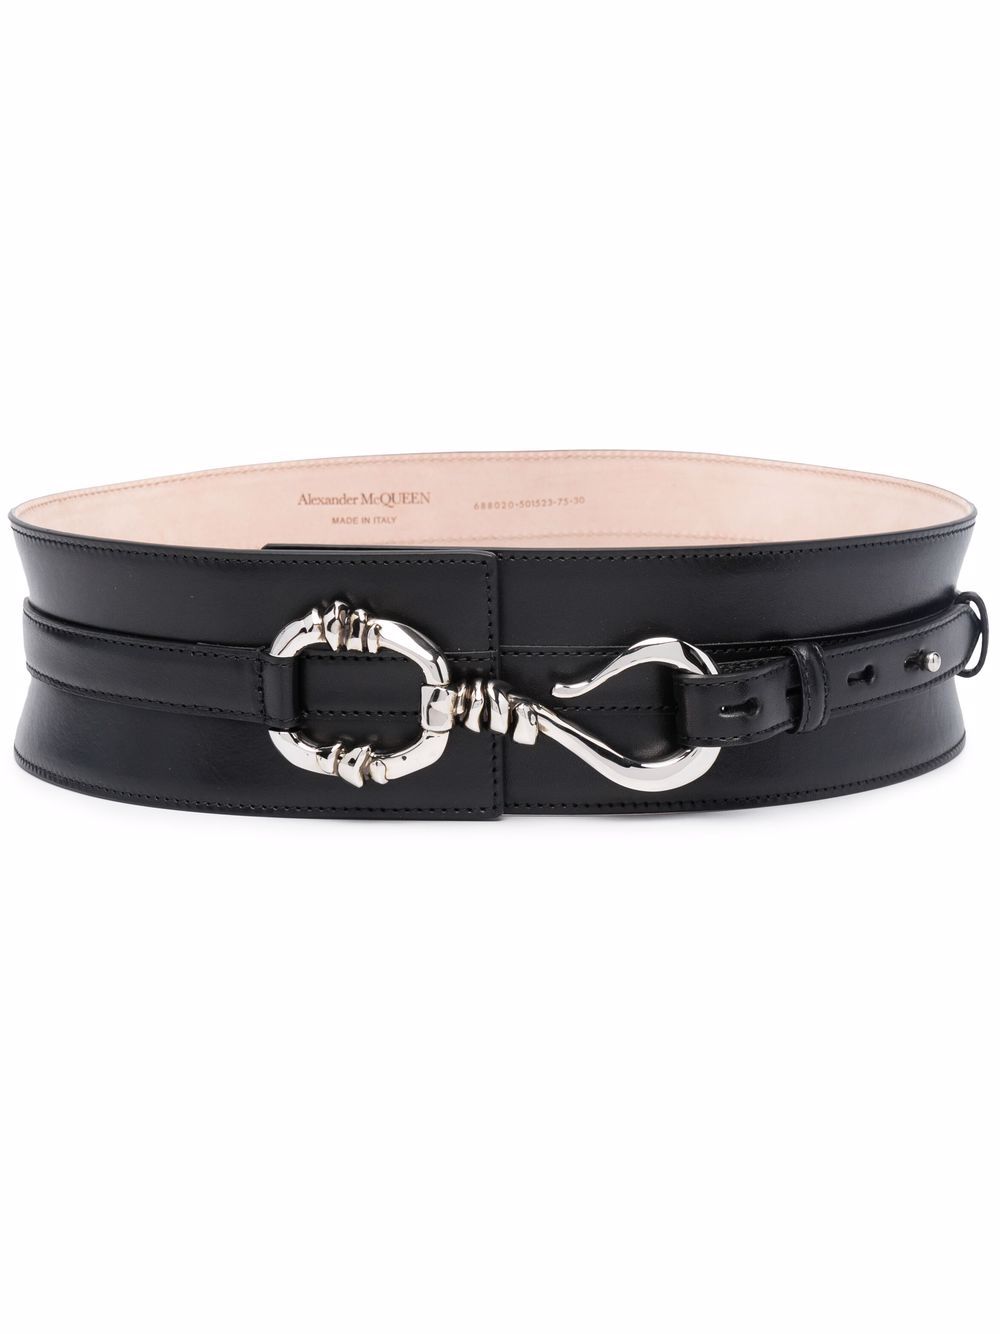 Alexander McQueen wide leather belt - Black von Alexander McQueen